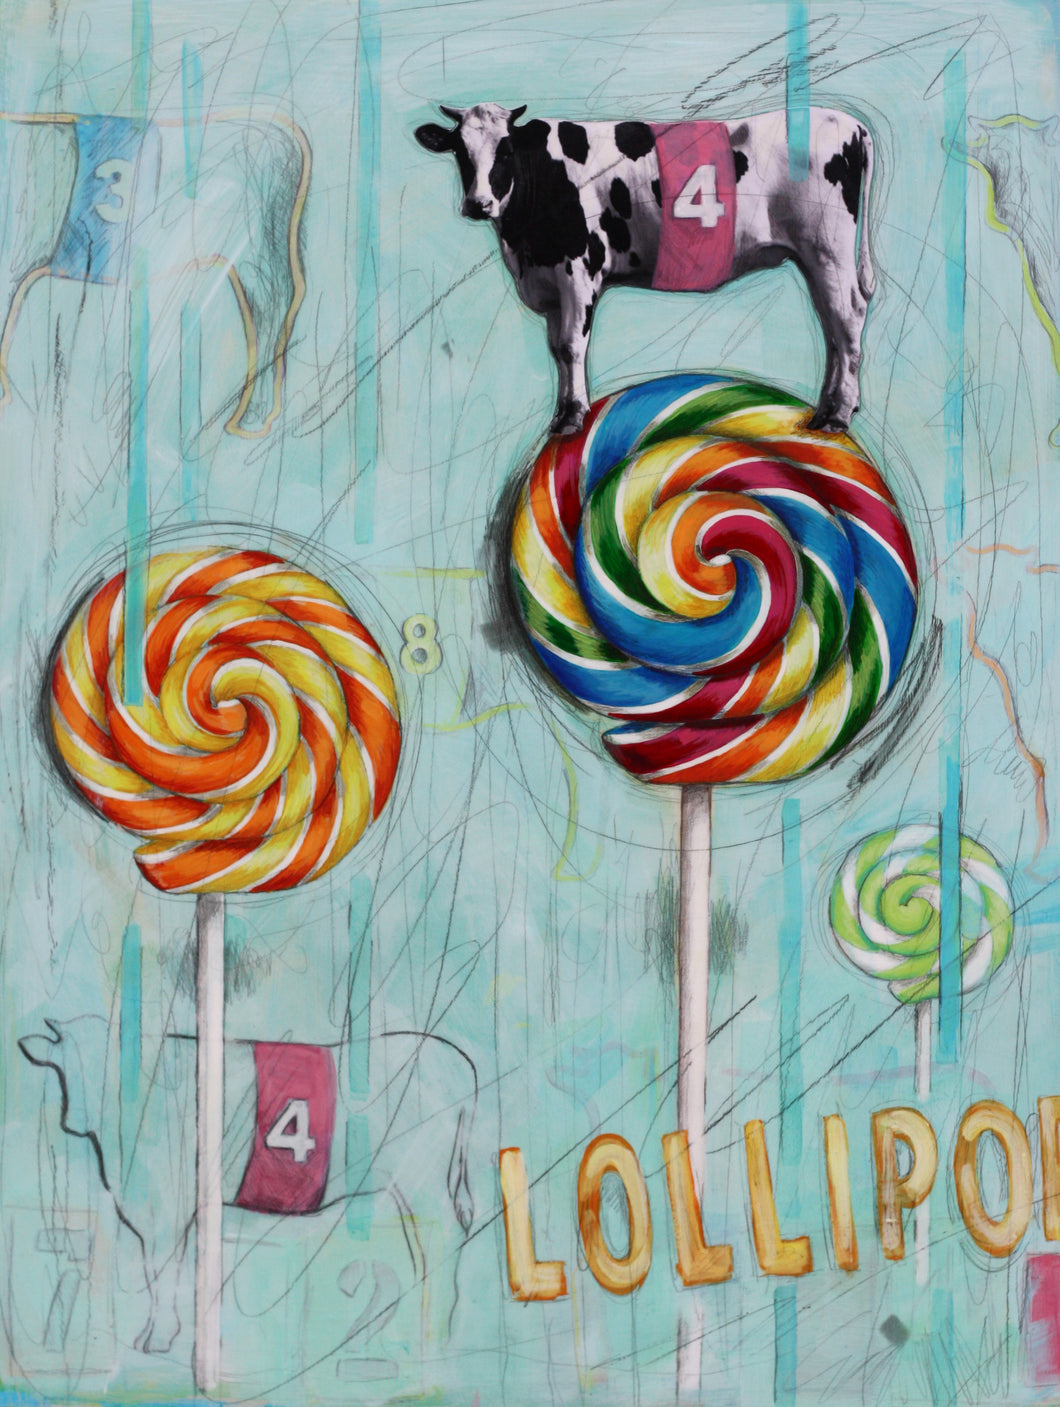 Lollipop, Lollipop, Cow on Top